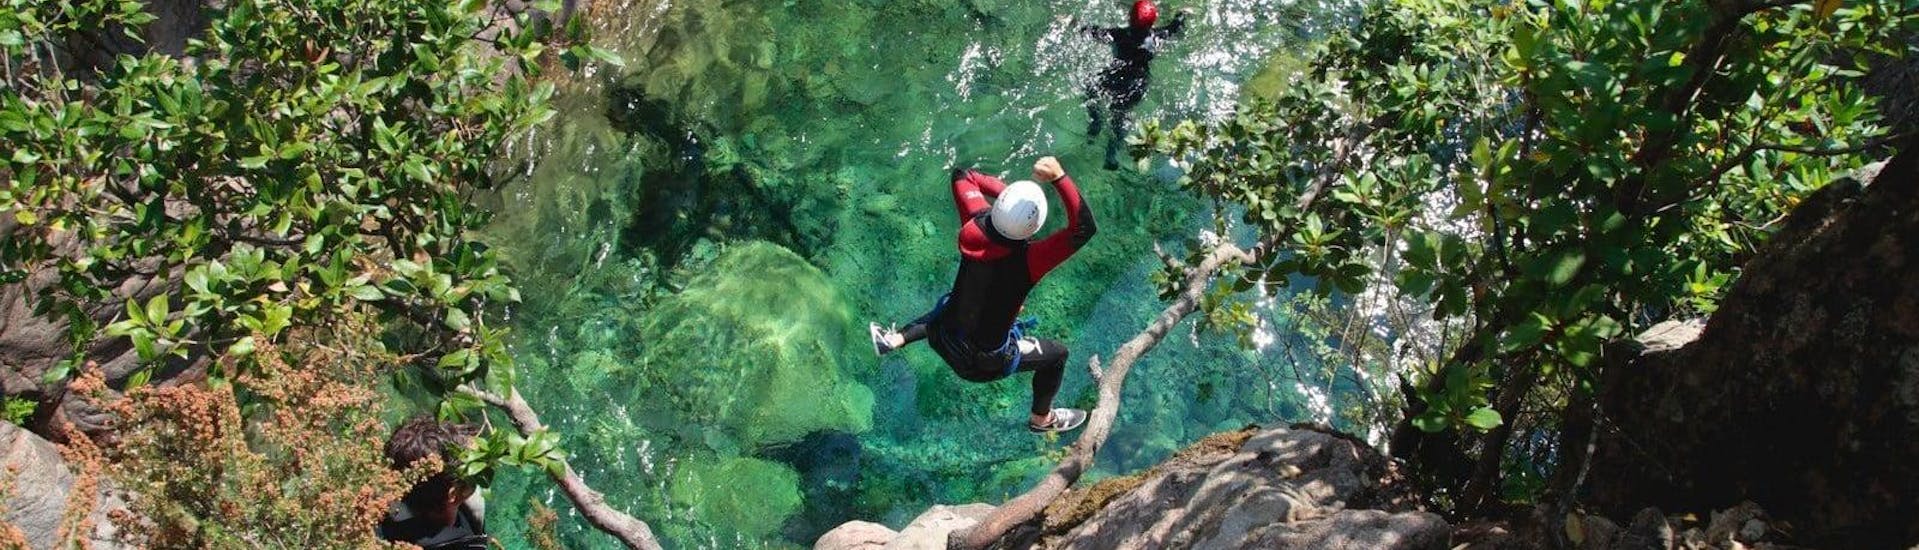 Un participant à la sortie Canyoning "Découverte" - Canyon de Pulischellu saute dans une piscine naturelle vert émeraude sous la supervision d'un guide de canyoning qualifié d'Acqua et Natura.